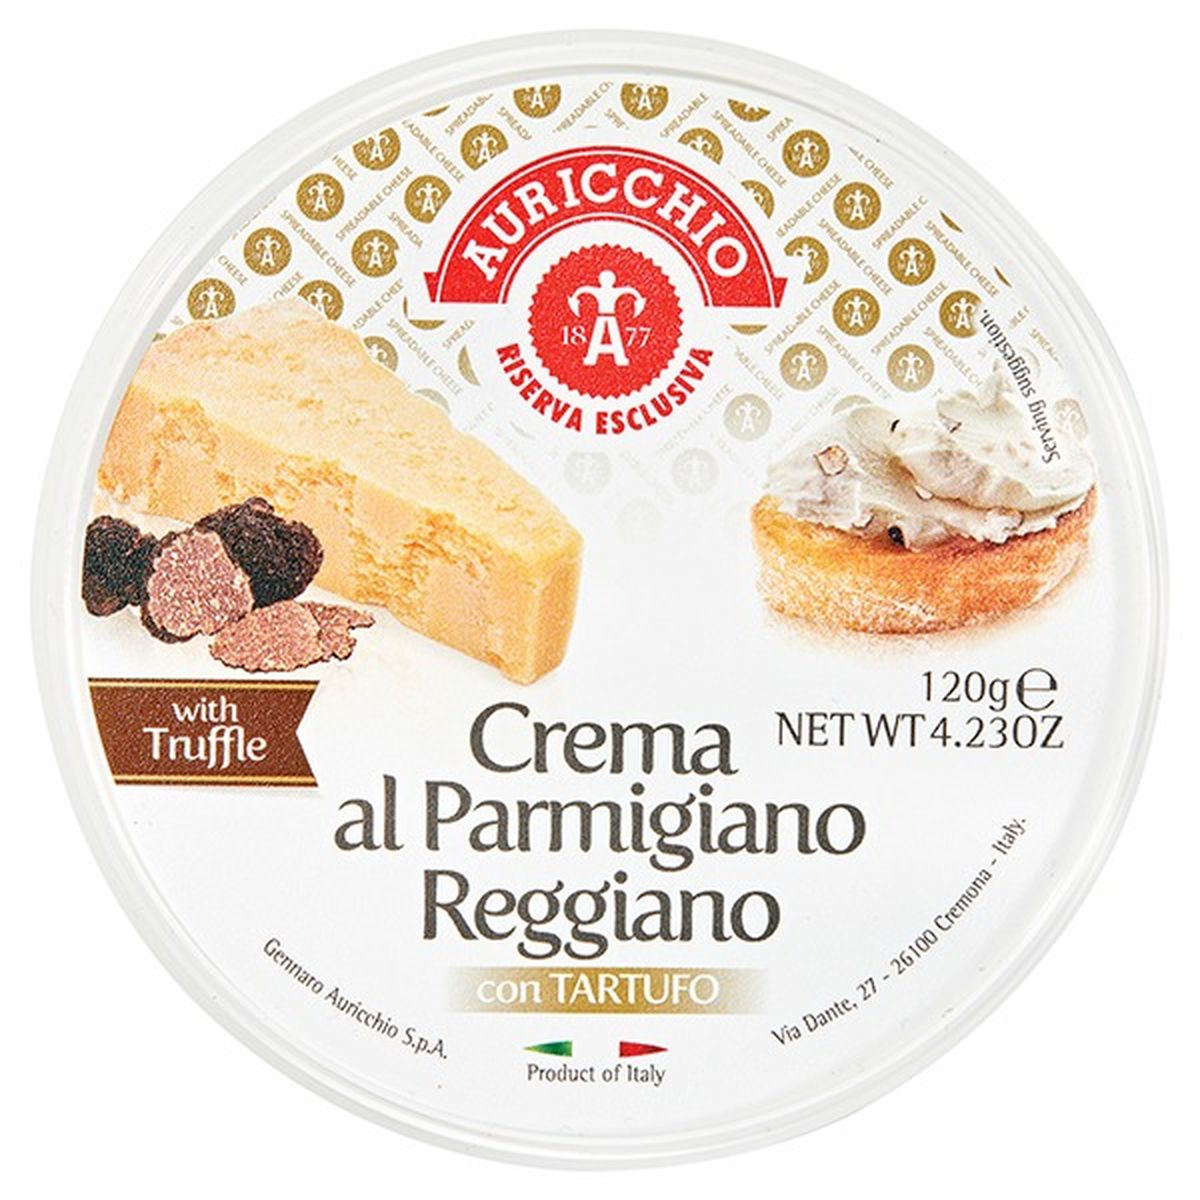 Calories in Riserva Esclusiva Auricchio Parmigiano Reggiano Crema with Truffles